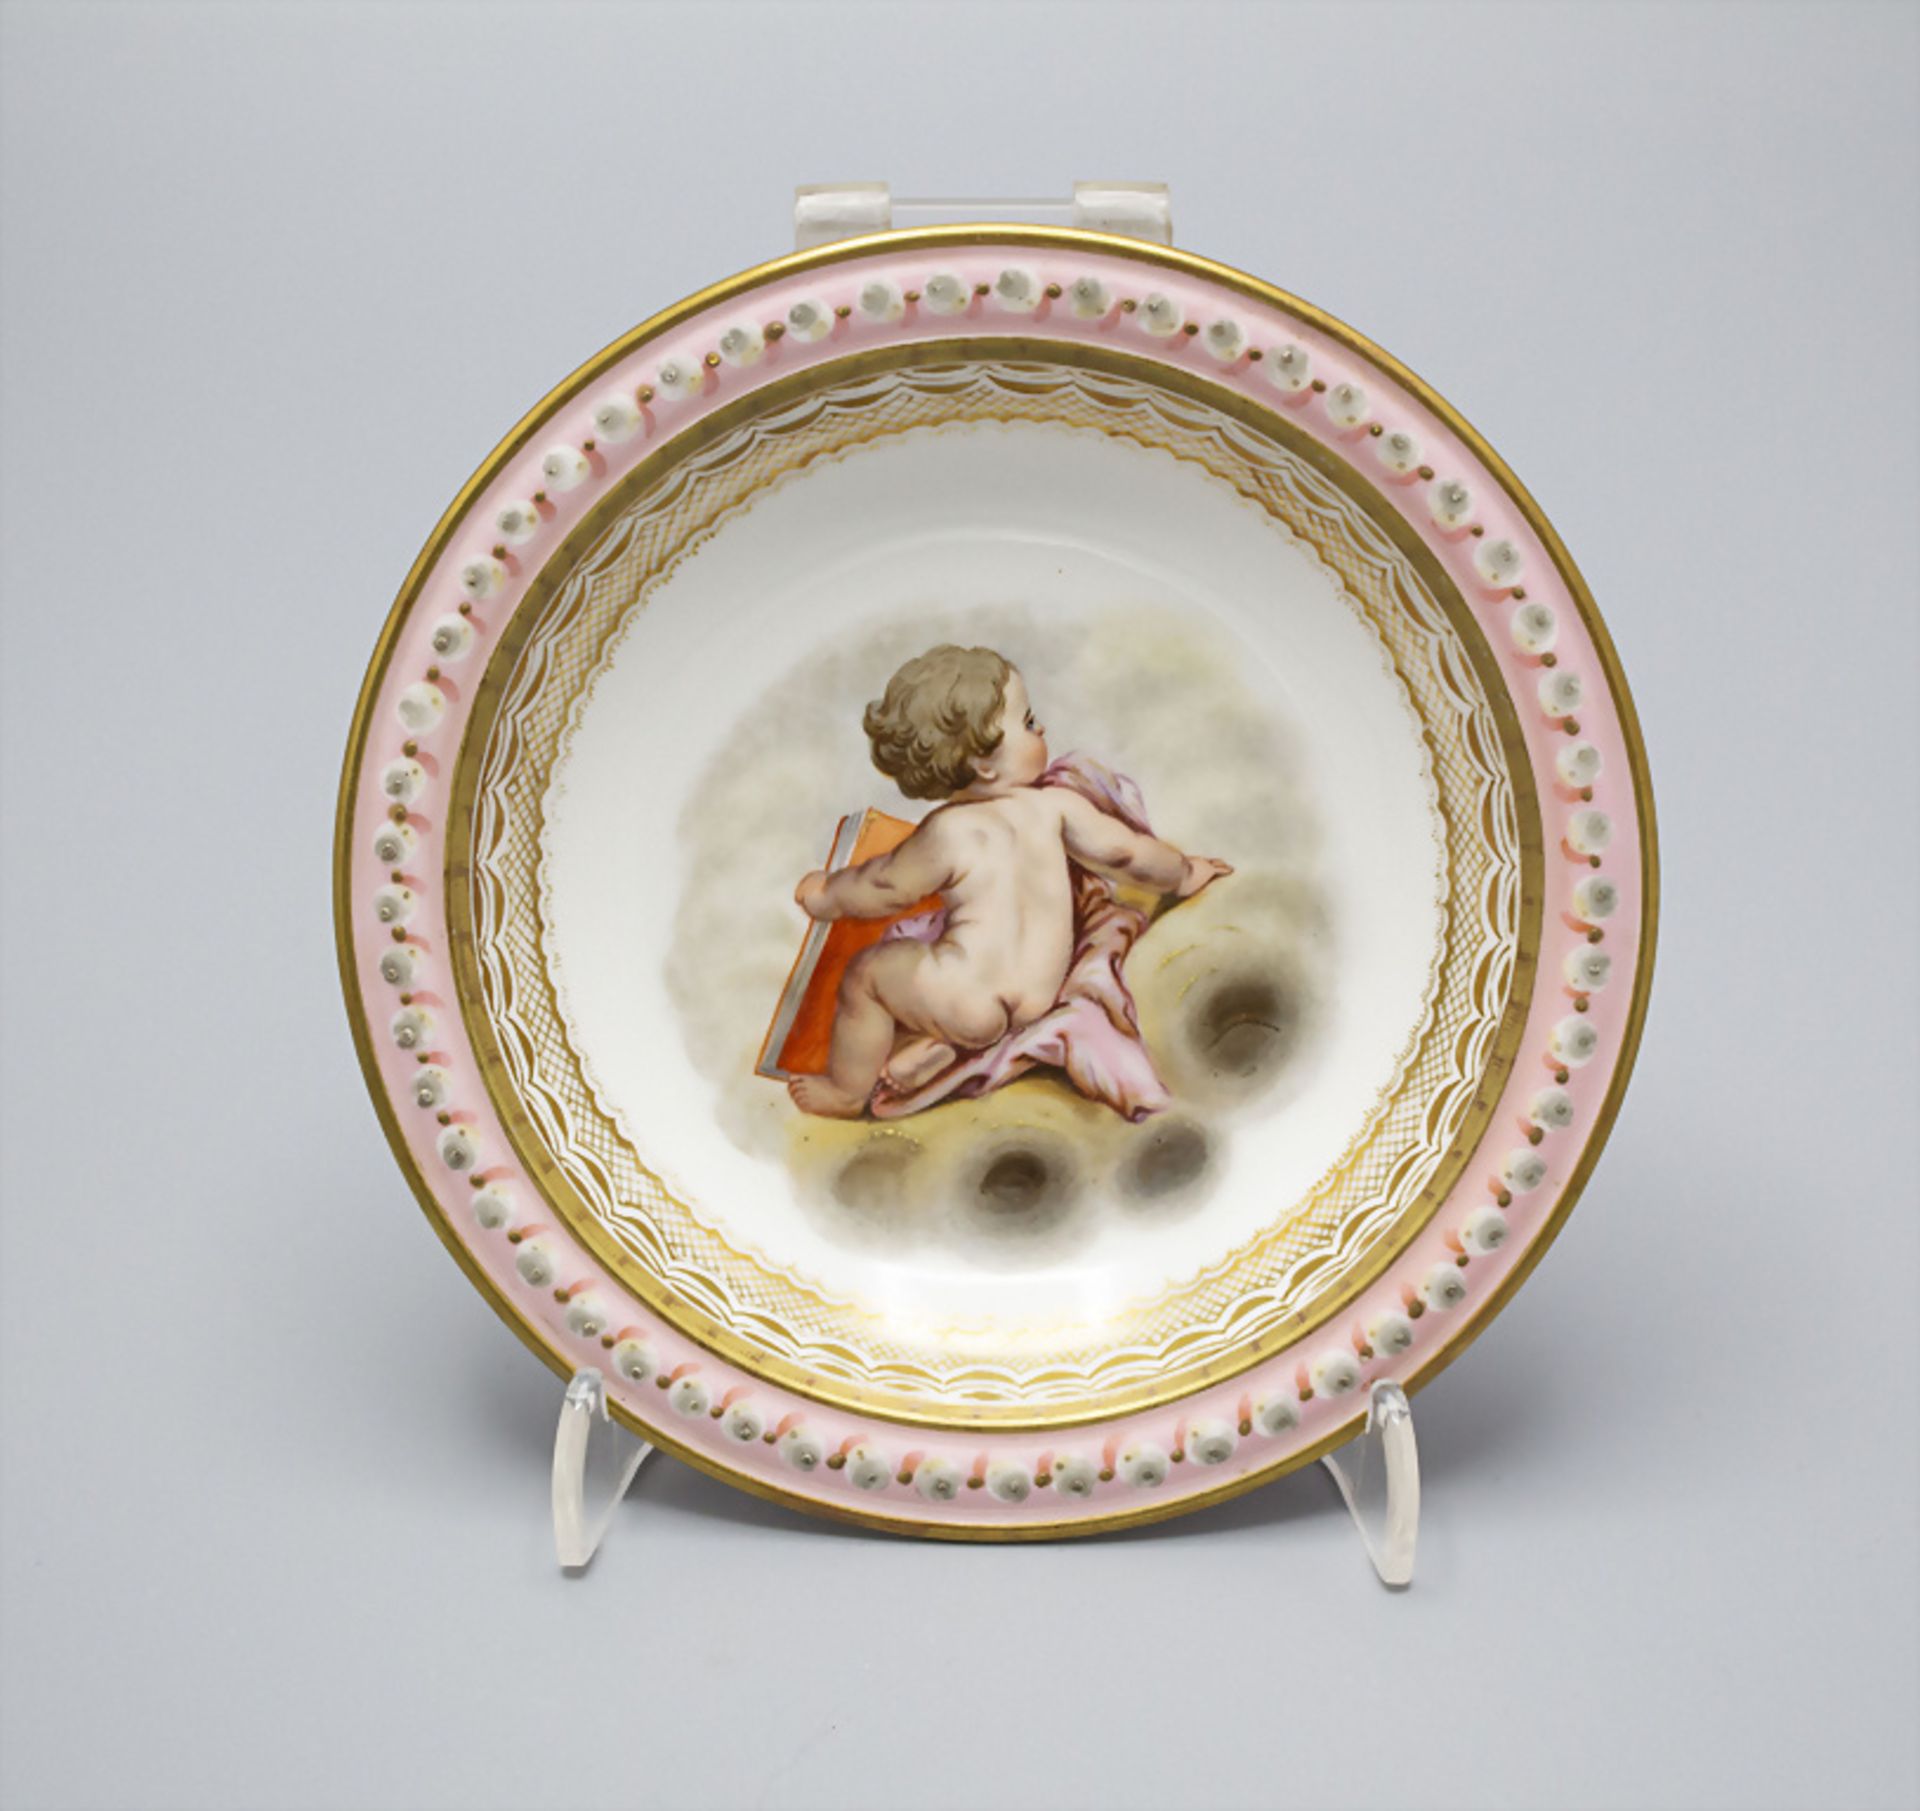 Zierschälchen mit Putto / A decorative dish with a cherub, Sèvres, 1852